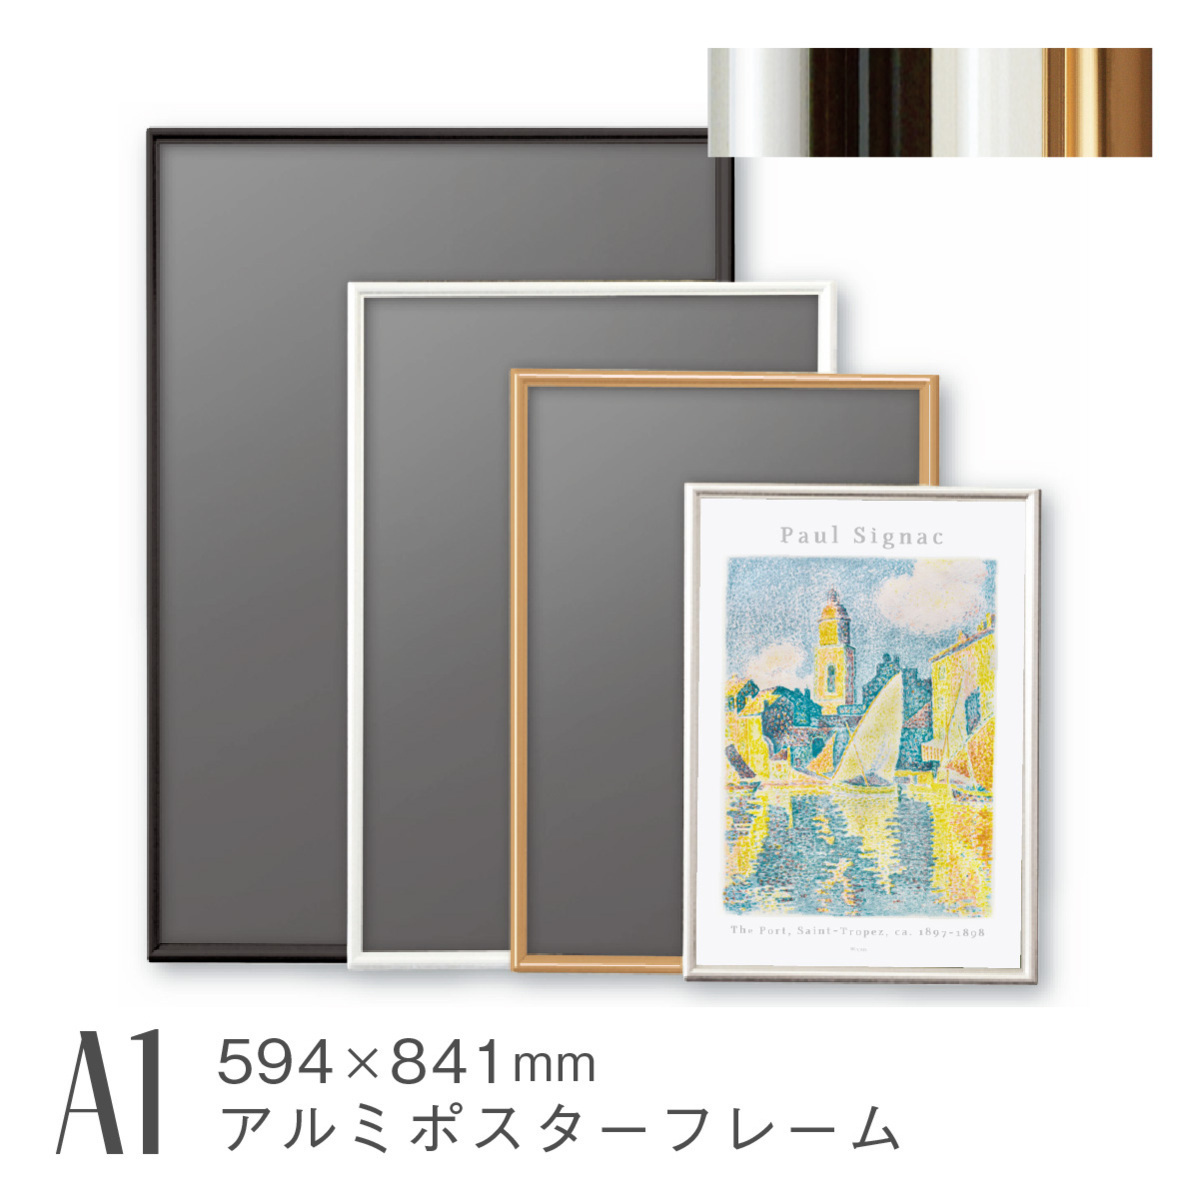 شكل A1 إطار ملصق أسود من الألومنيوم إطار صورة فنية كبير جدًا يعلق على الحائط خفيف الوزن AR-SH-A1, اللوازم الفنية, إطار الصورة, إطار الملصق